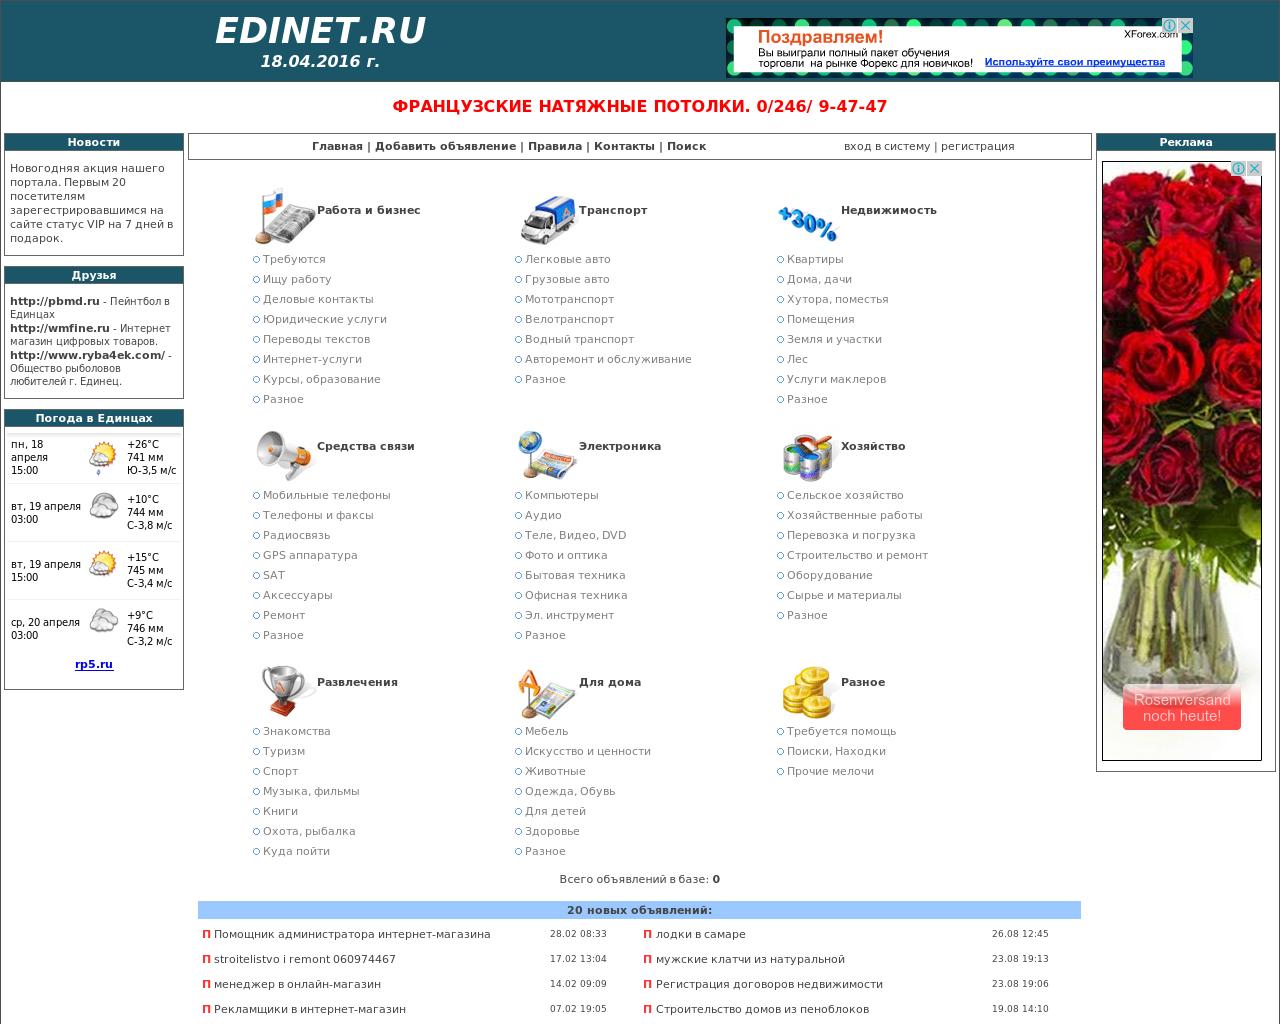 Изображение сайта edinet.ru в разрешении 1280x1024